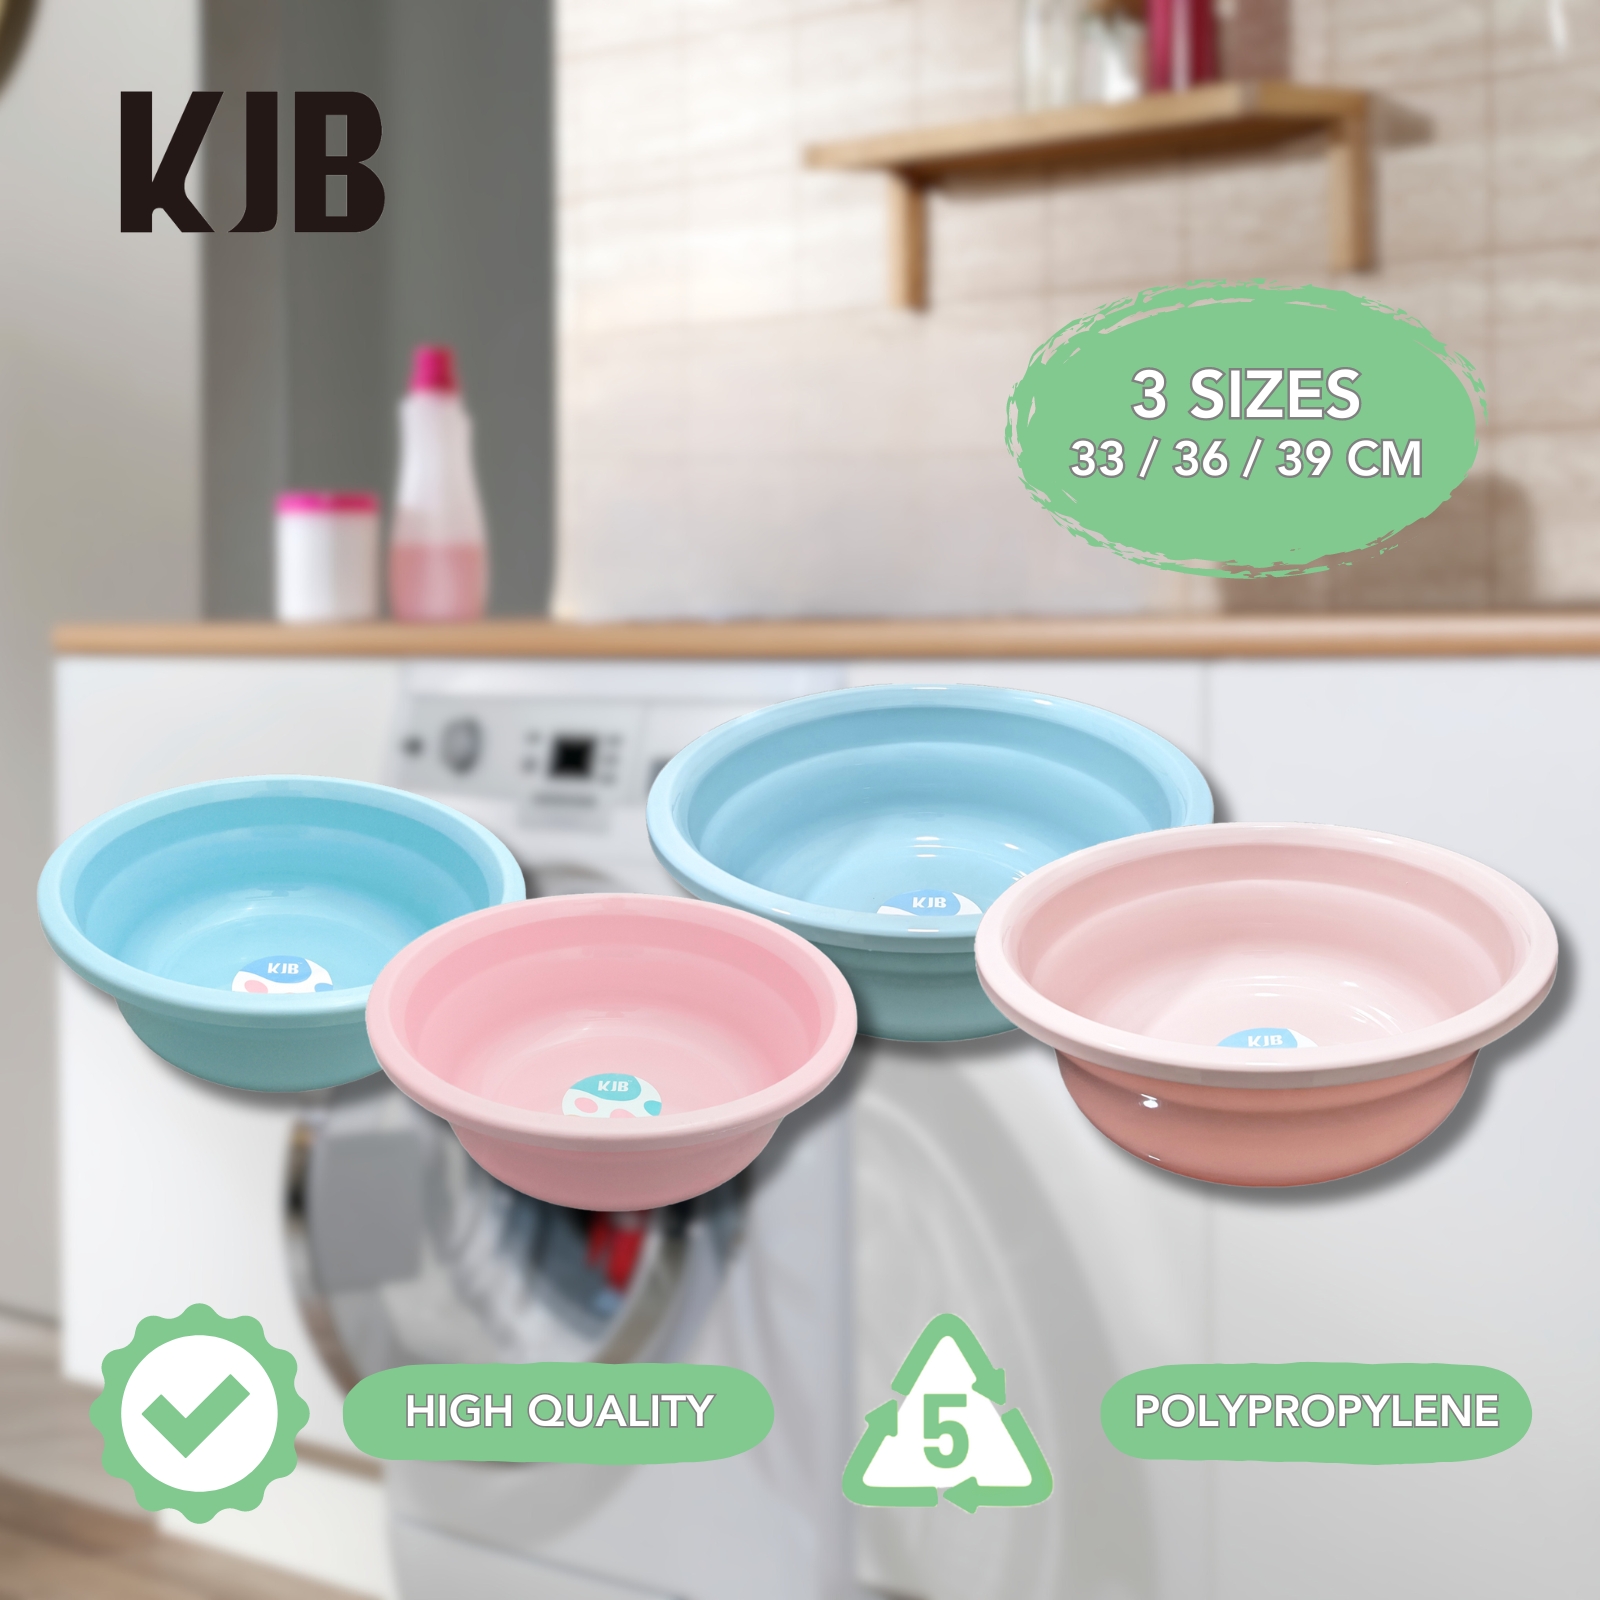 KJB Plastic Rounded Basin Tub - High Quality Polypropylene Multipurpose Washing & Cleaning